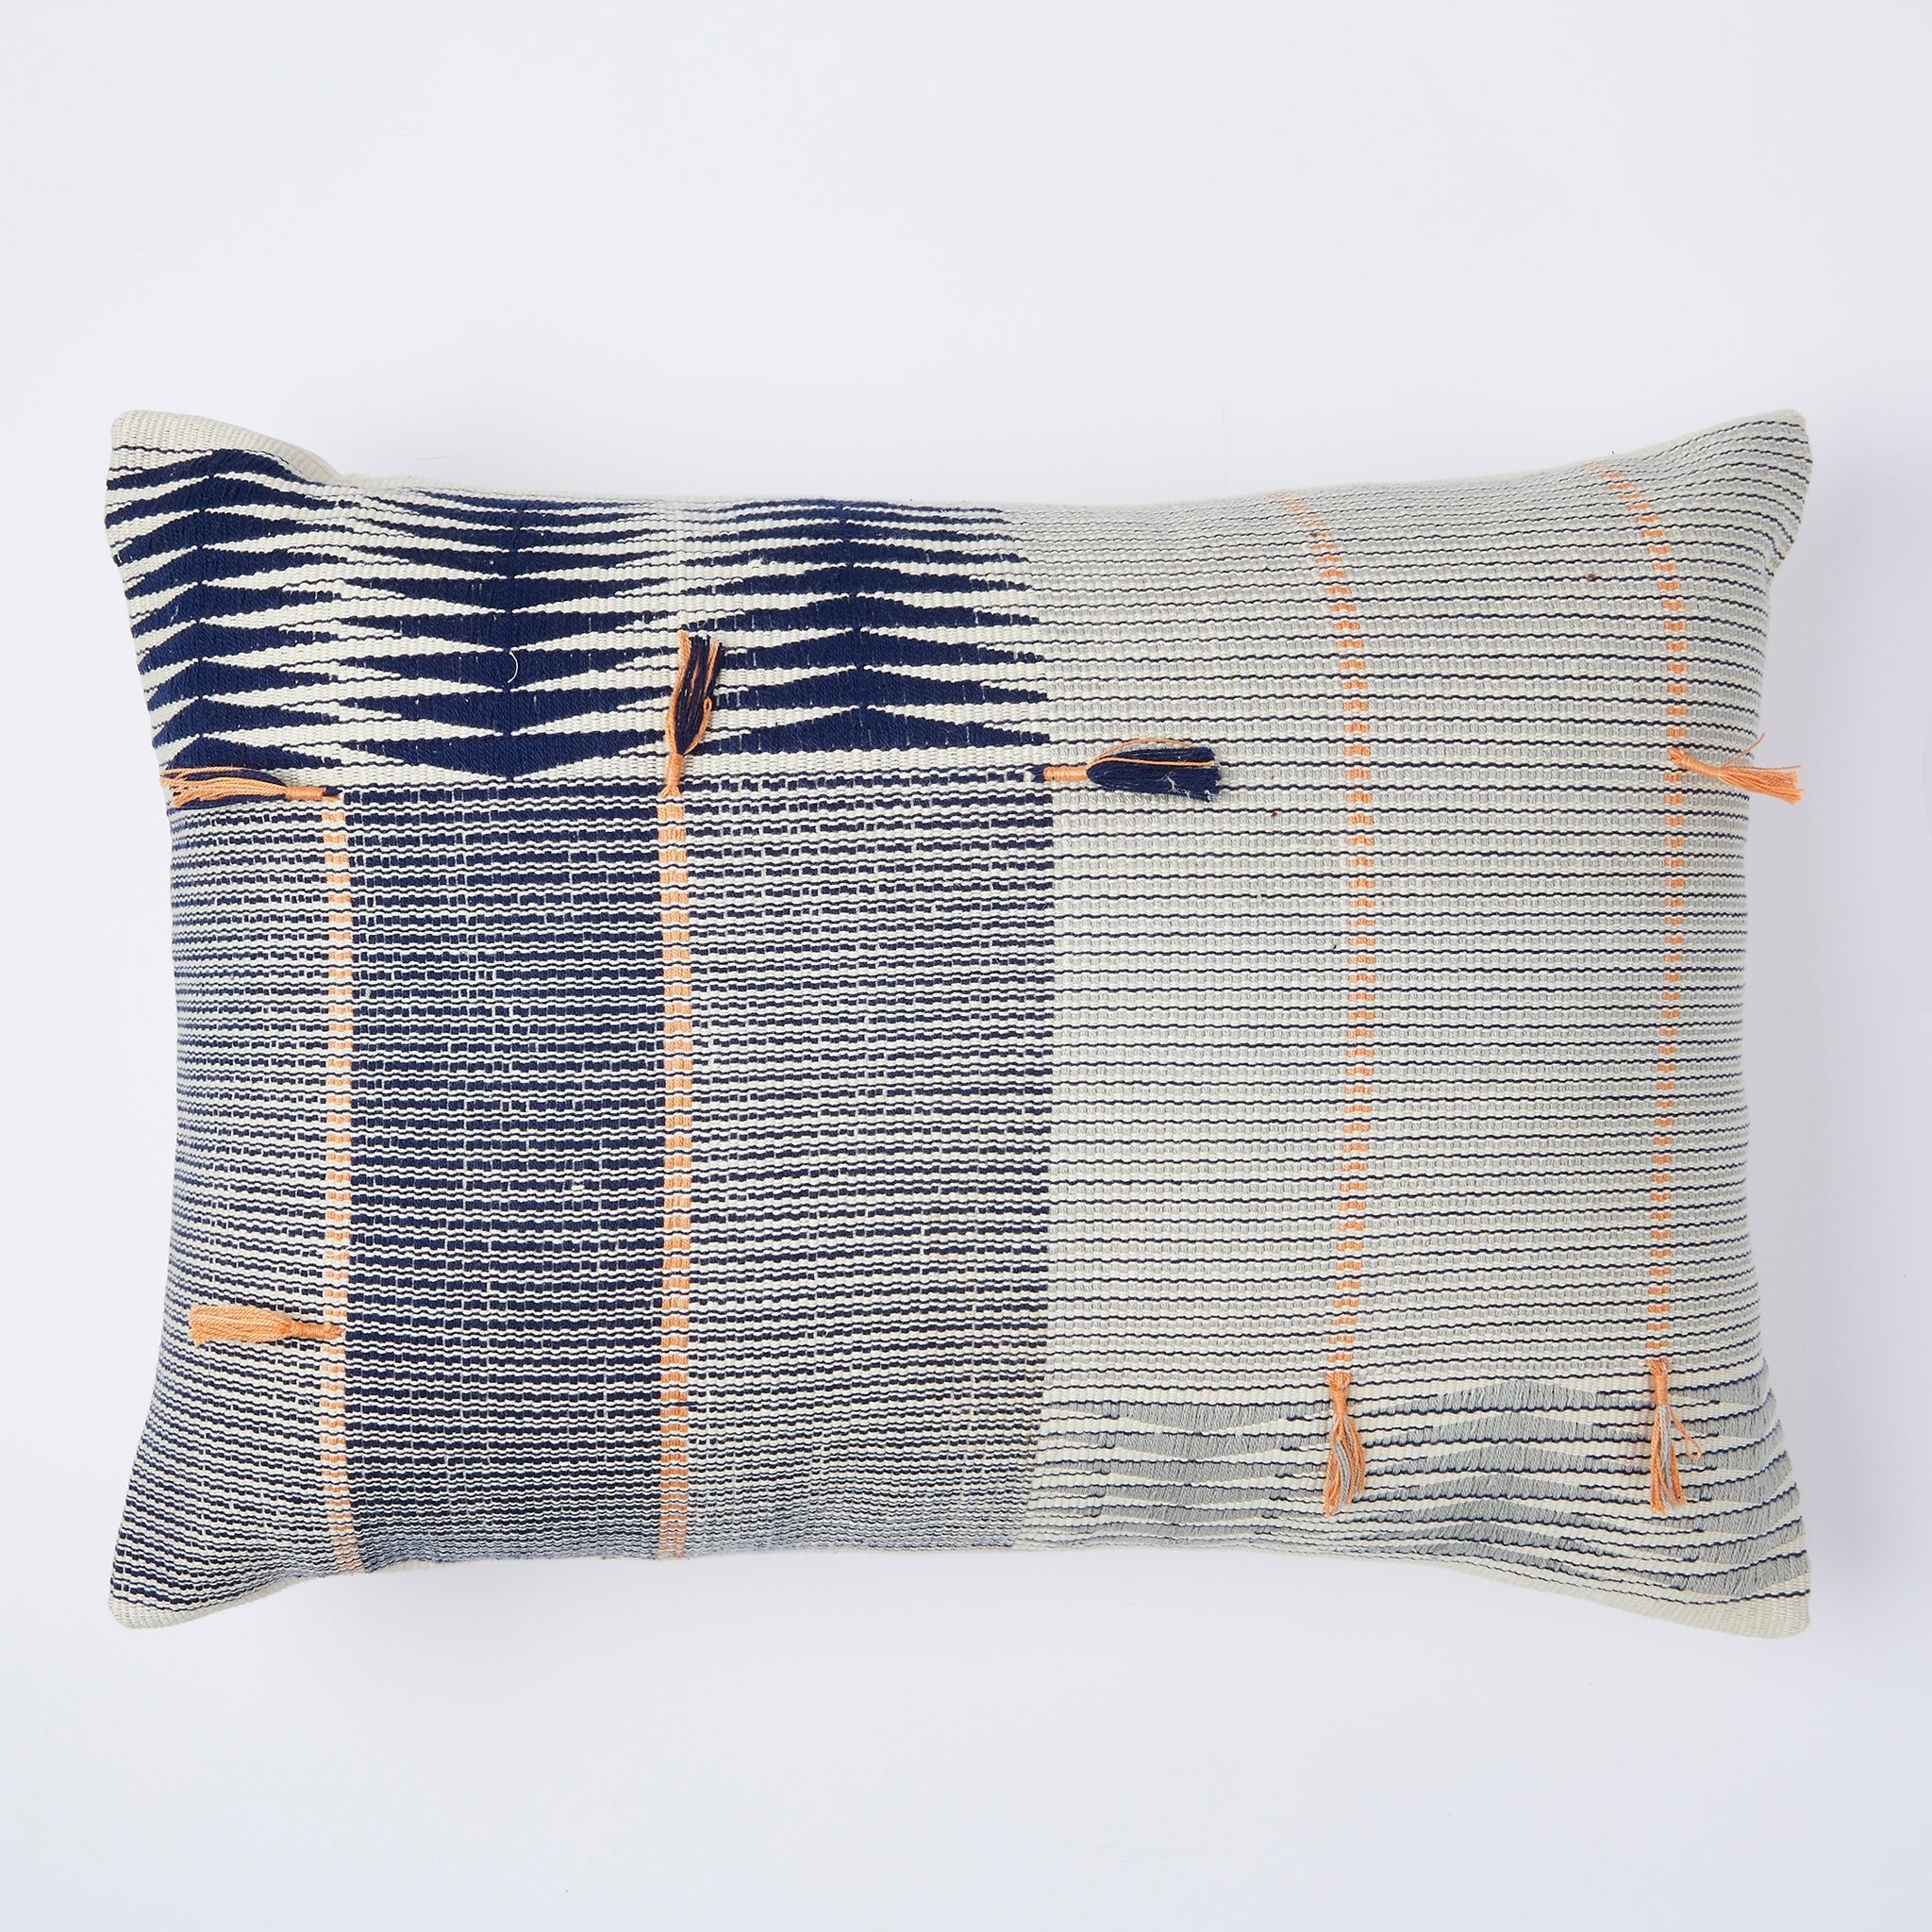 Hand-woven cushion Jotsoma 40x60 - By Native